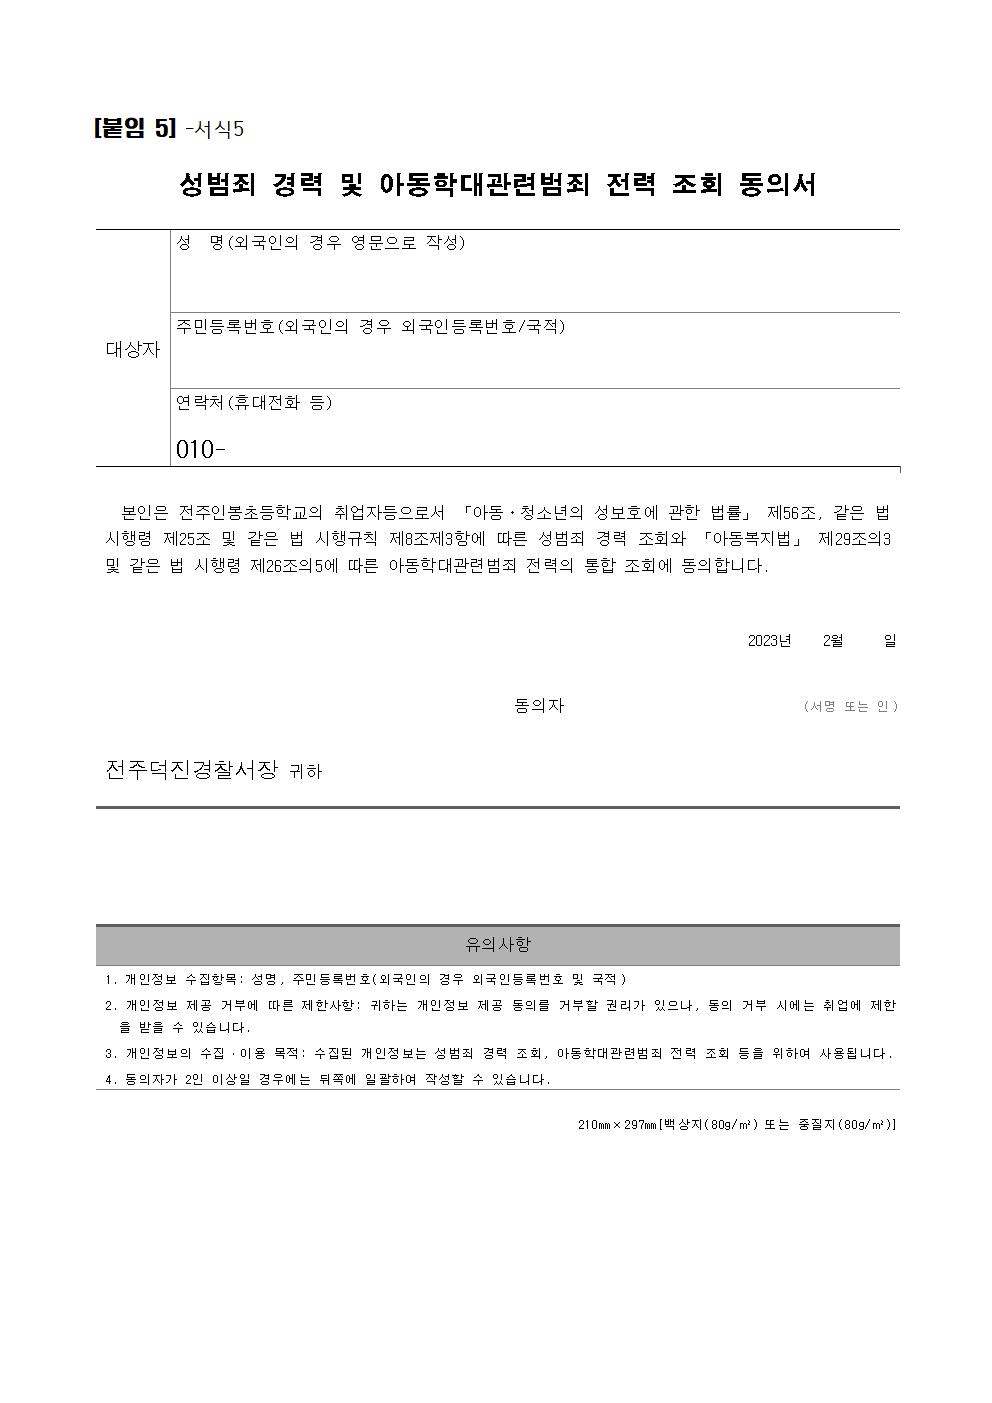 공고)2023년 3~9월 방역활동자원봉사자 공고문(전주인봉초)006